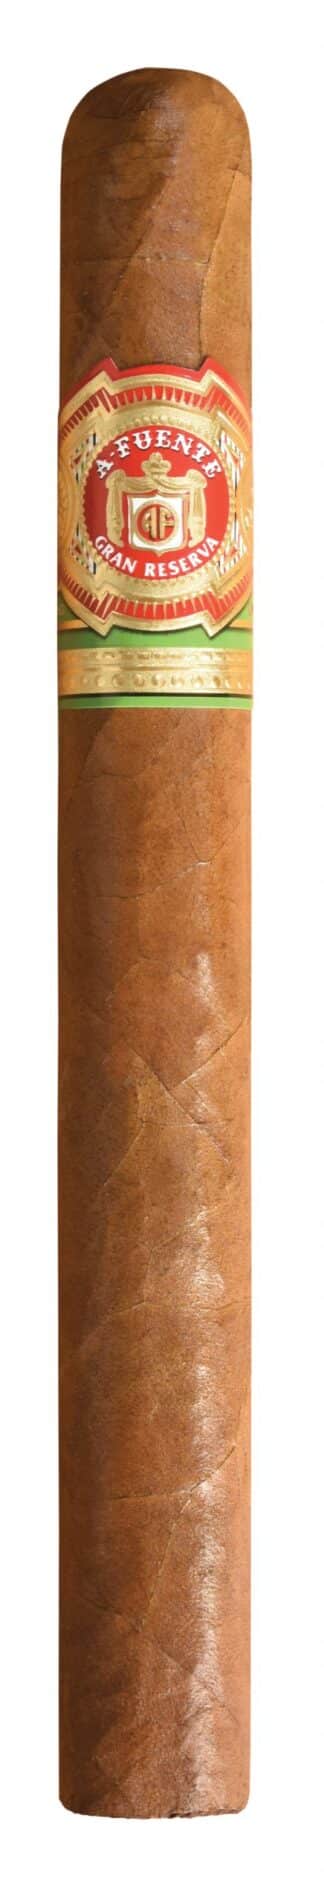 single arturo fuente corona imperial natural cigar